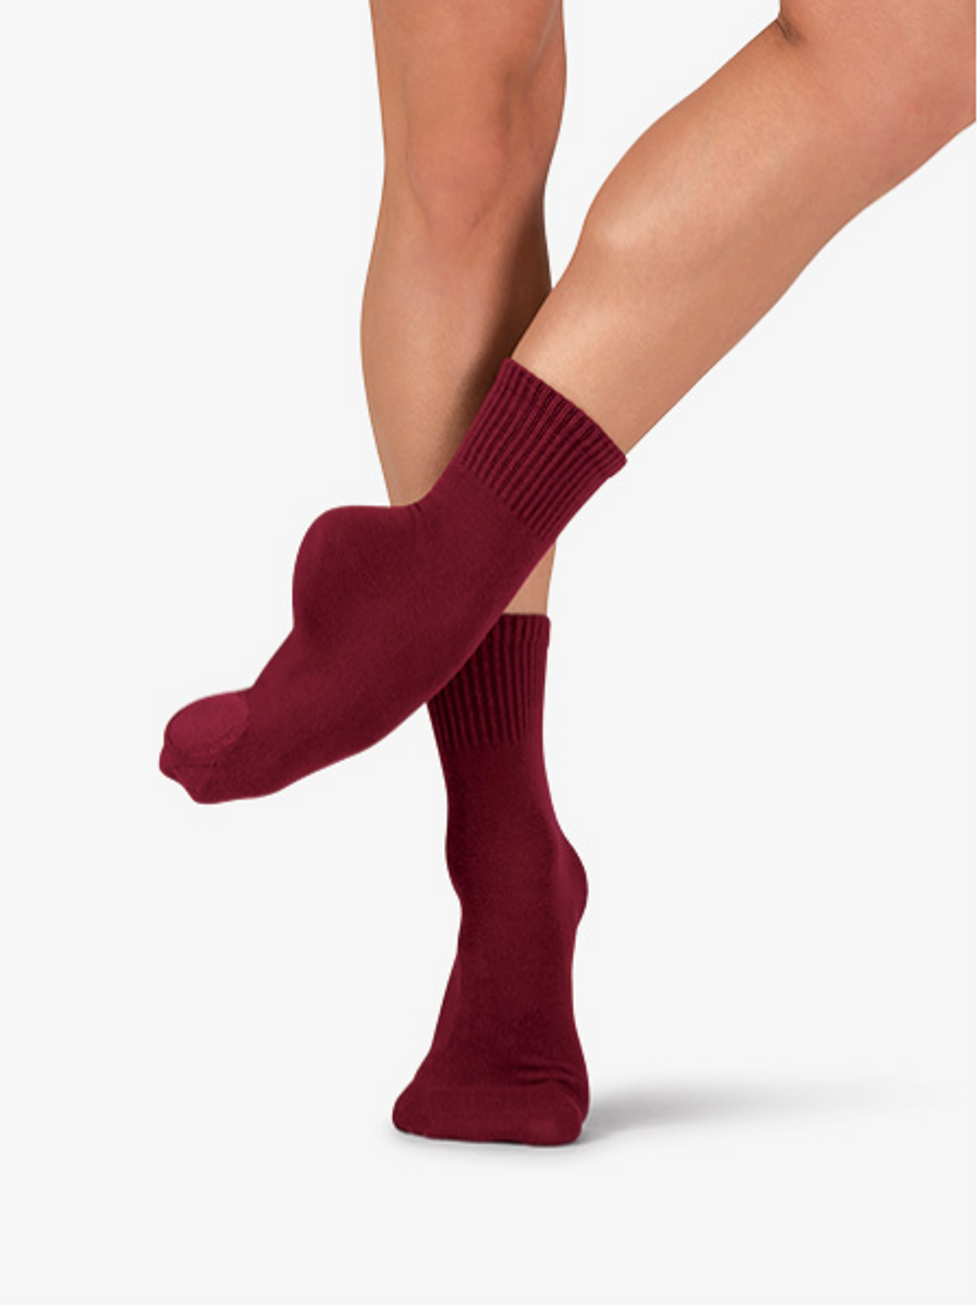 5 Non-Slip Socks for Contemporary Class